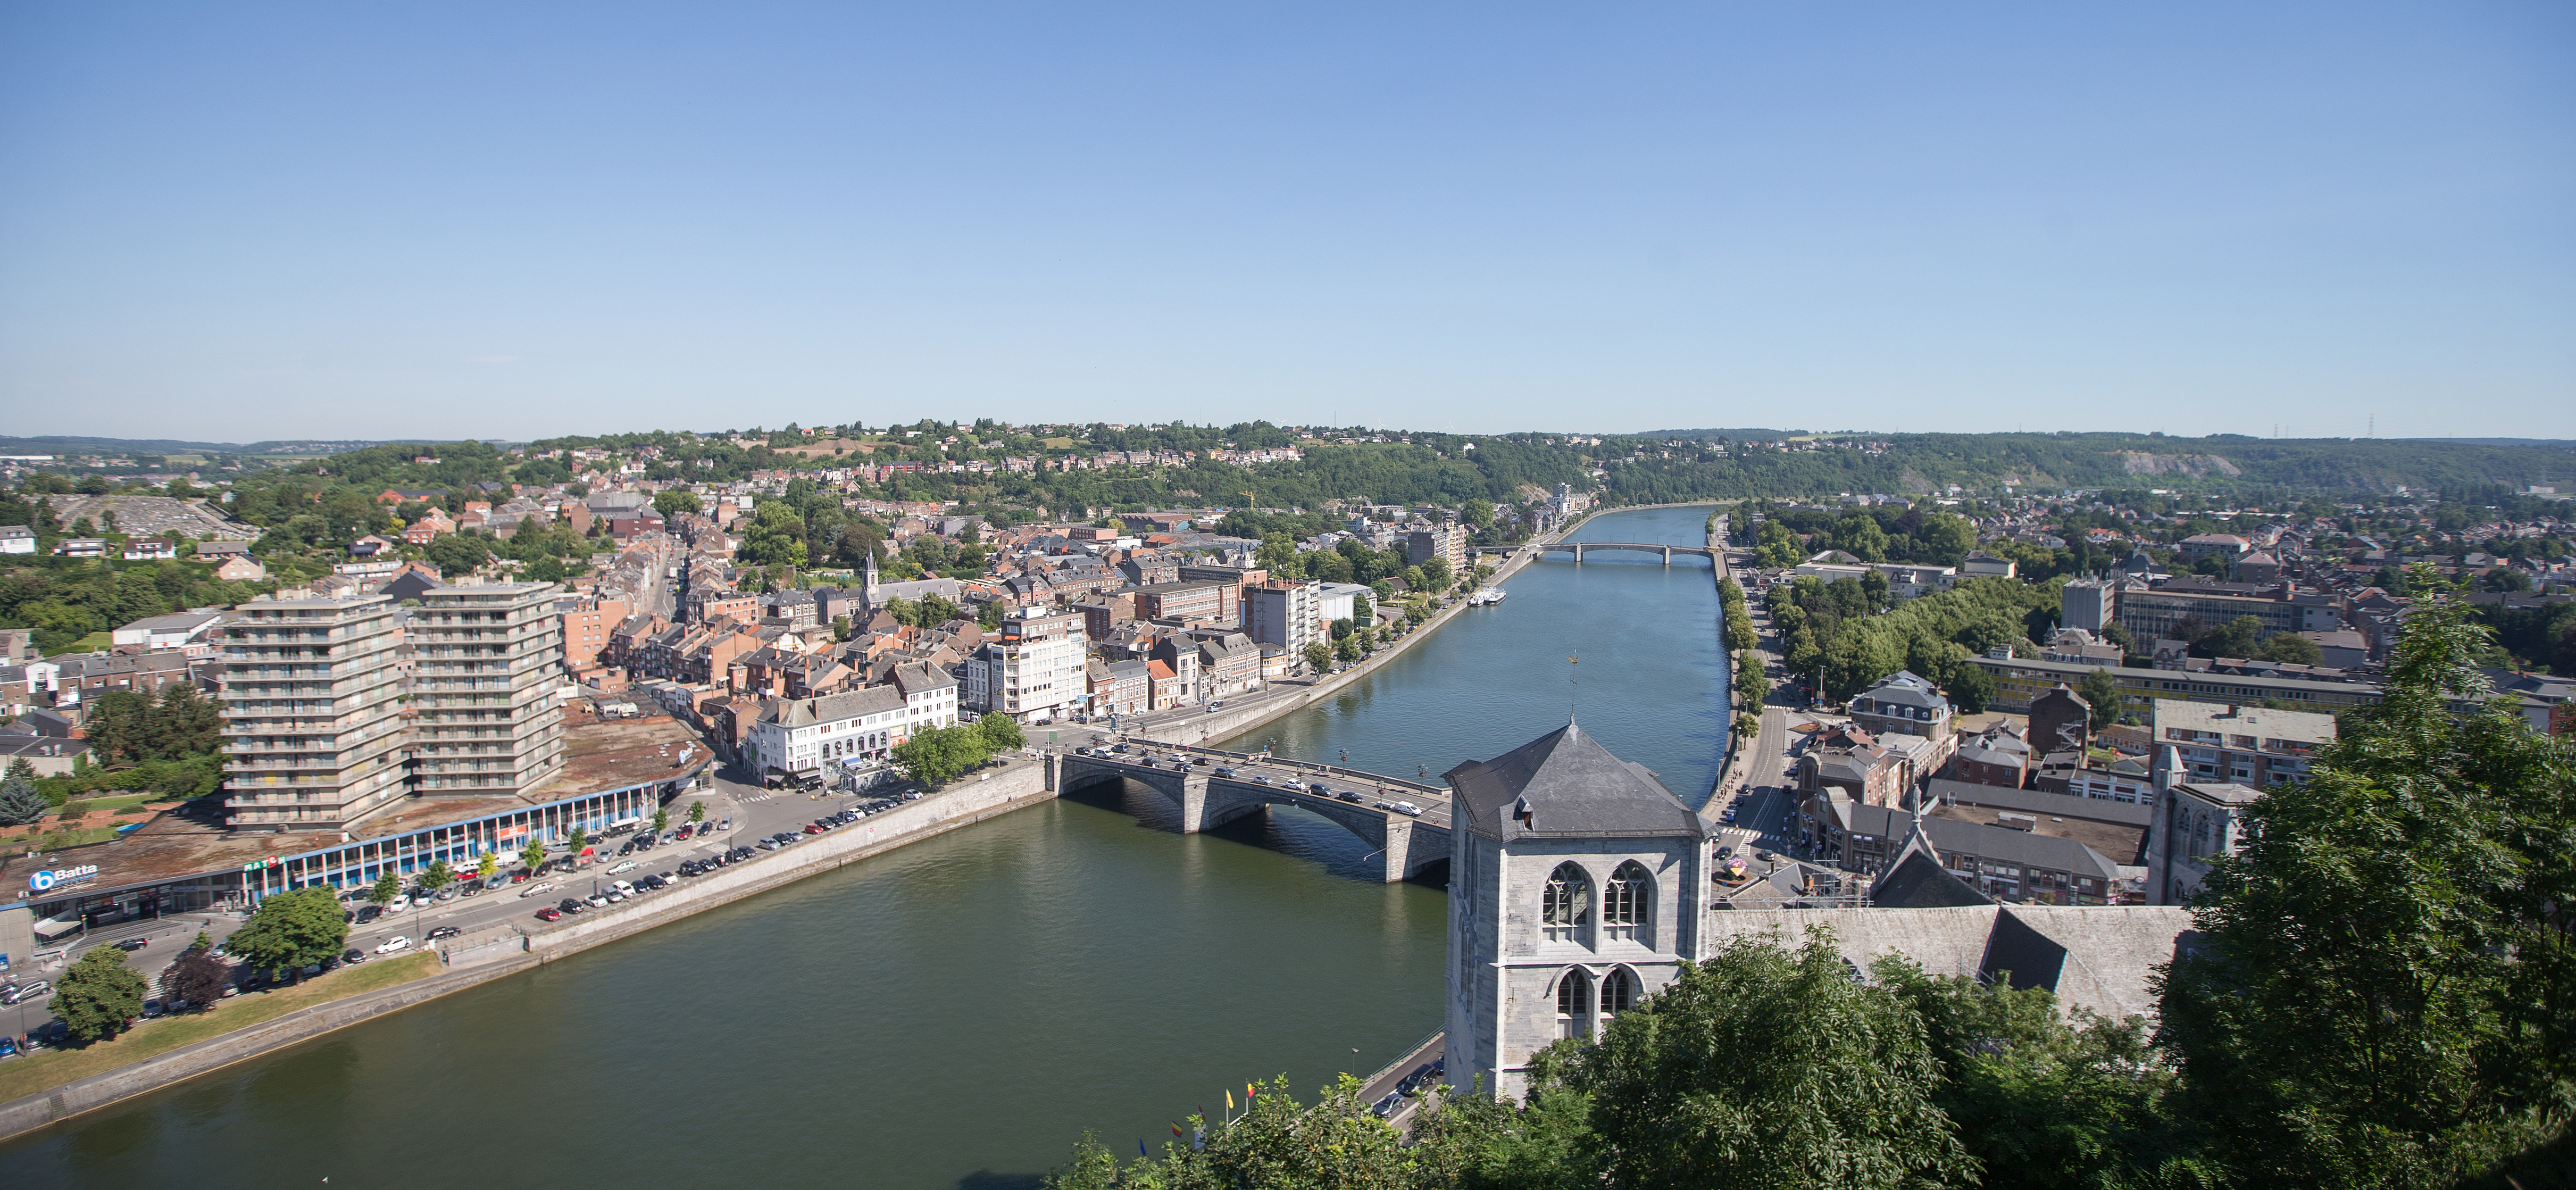 Huy vue du ciel. Photo panoramique qui montre en avant plan le Fort de Huy et le pont Roi Baudoin traversant la Meuse.